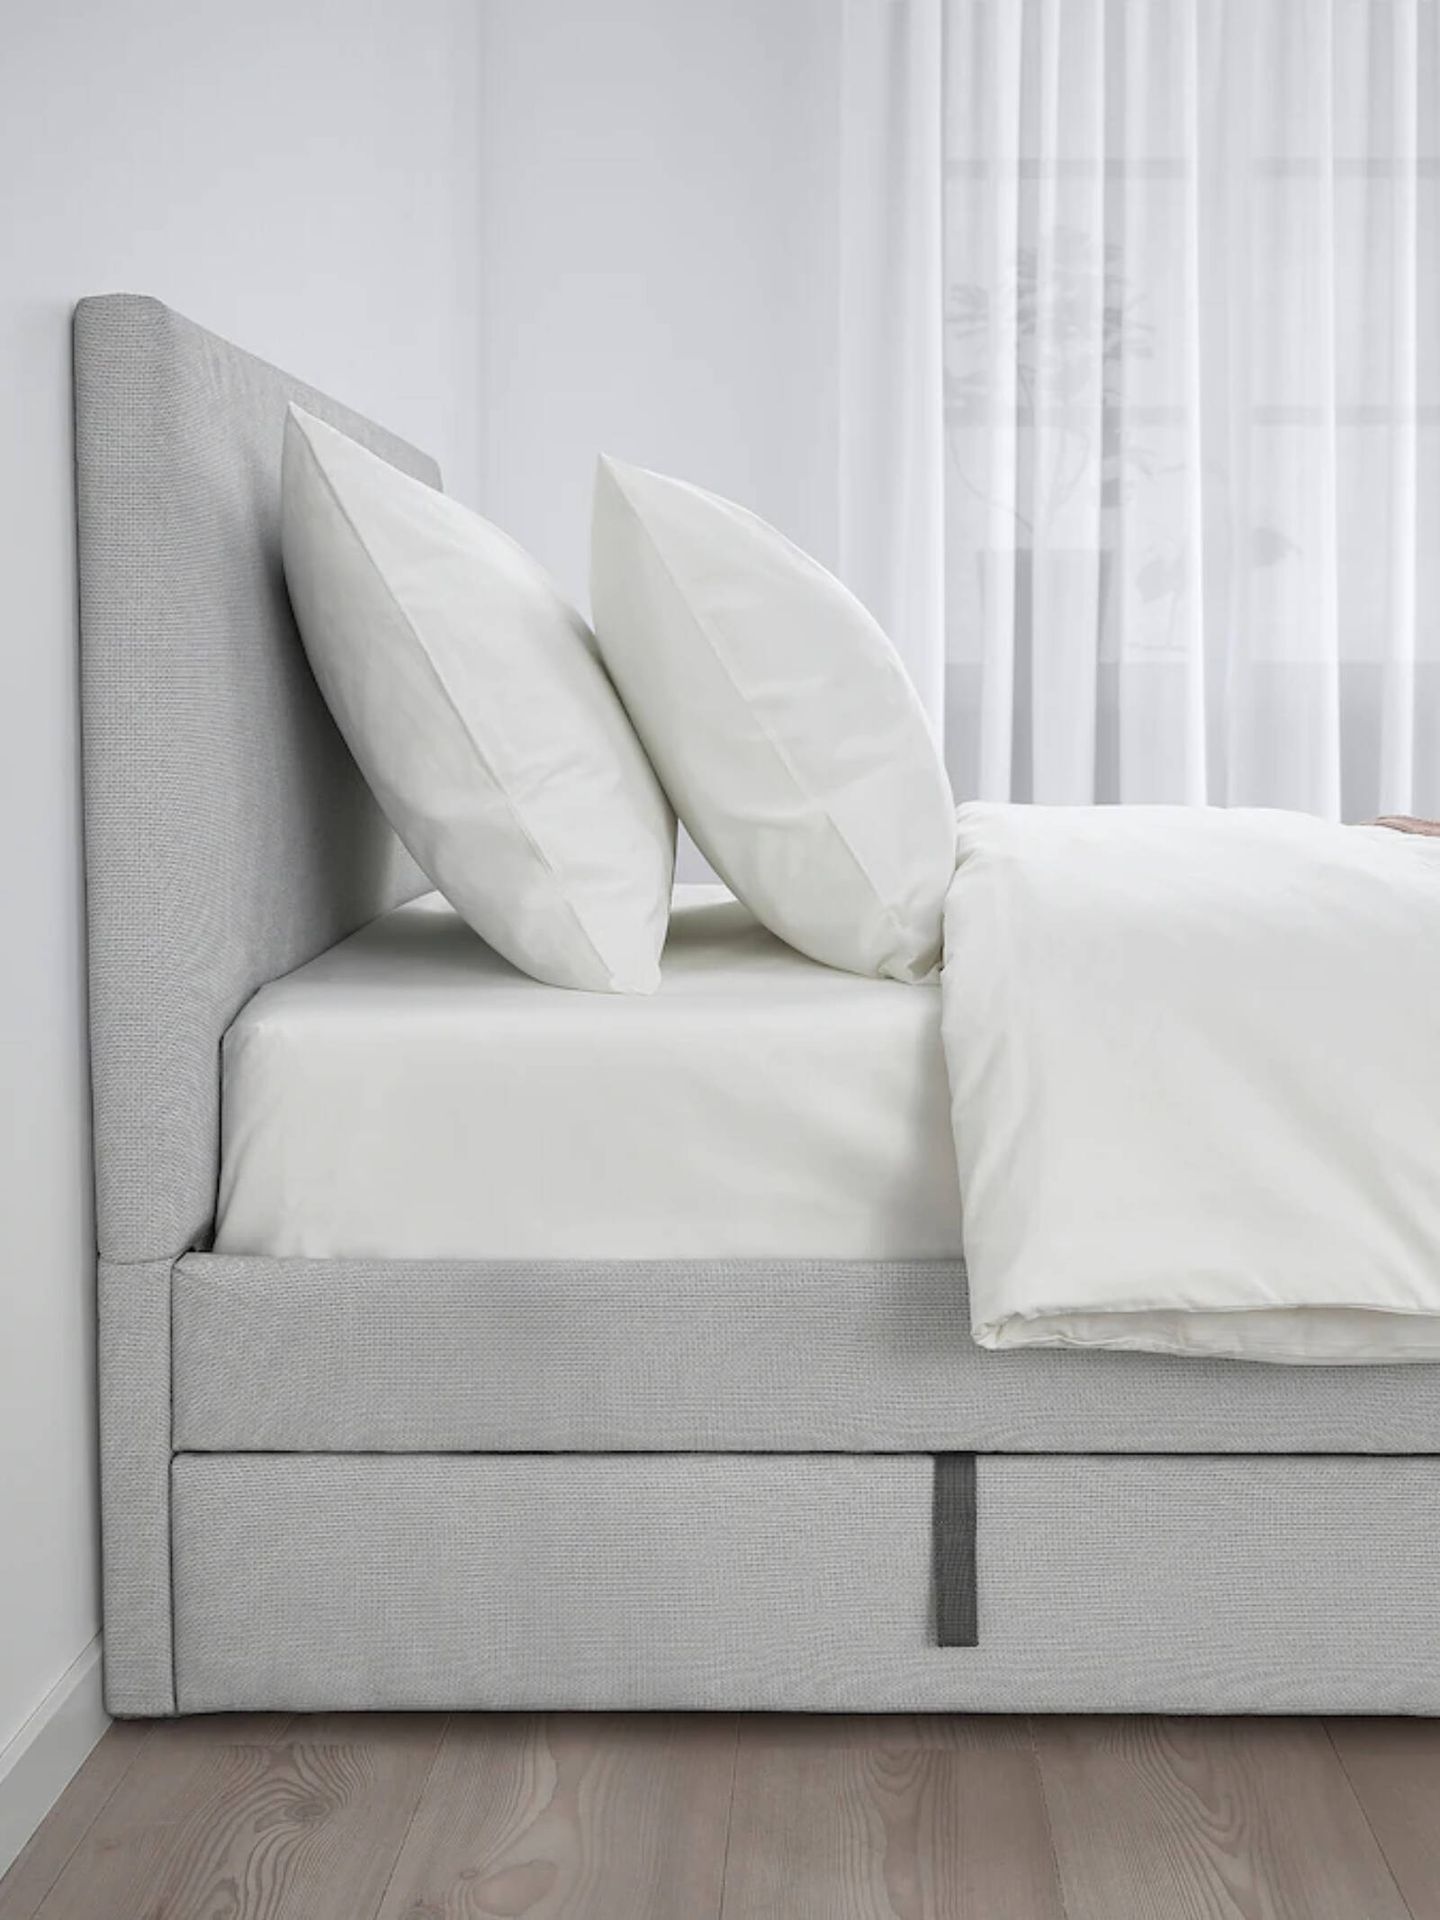 Esta cama de Ikea es el mueble ideal para dormitorios pequeños y ordenados. (Cortesía/ Ikea)